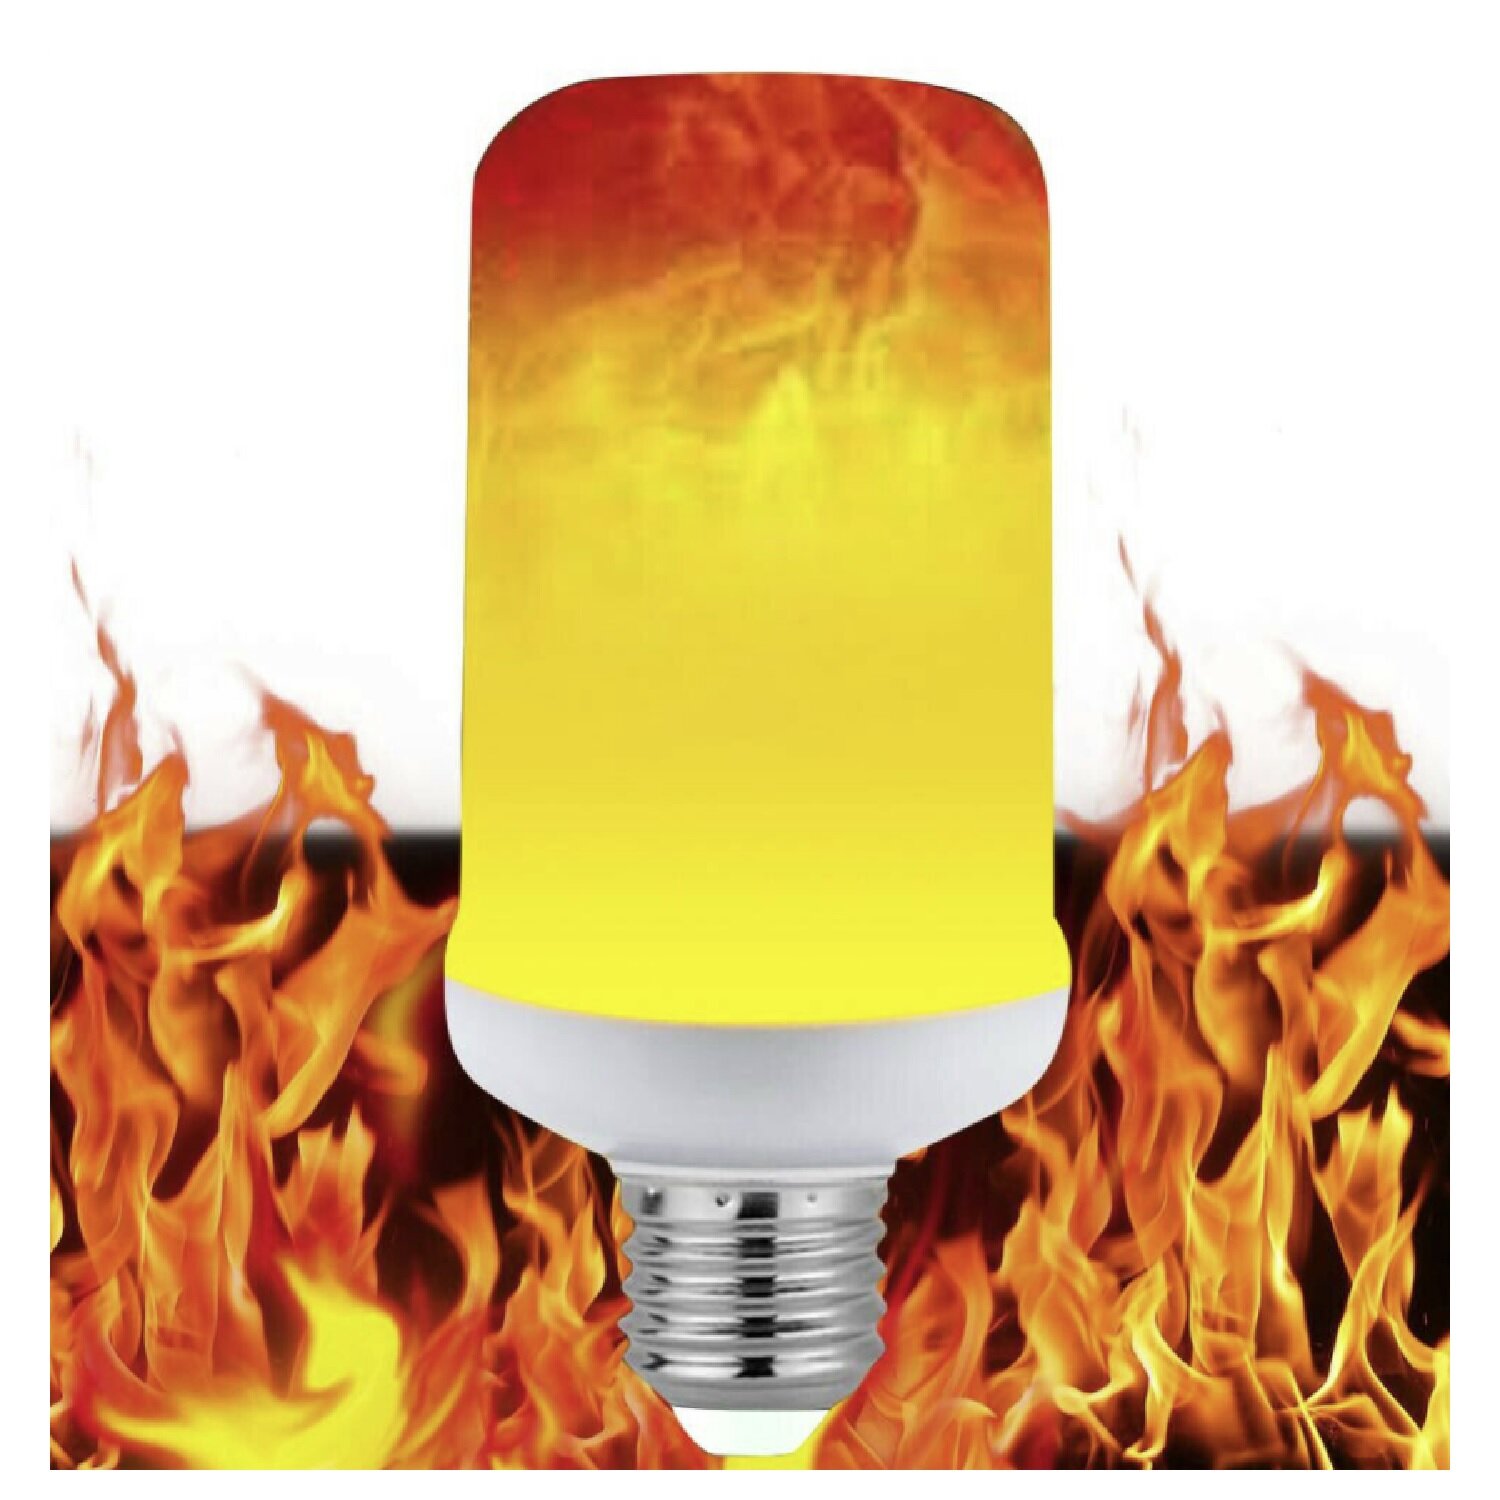 E27 Led Flicker Flame Light Bulb Simulated Burning Fire Effect Decor Lamp 120V 